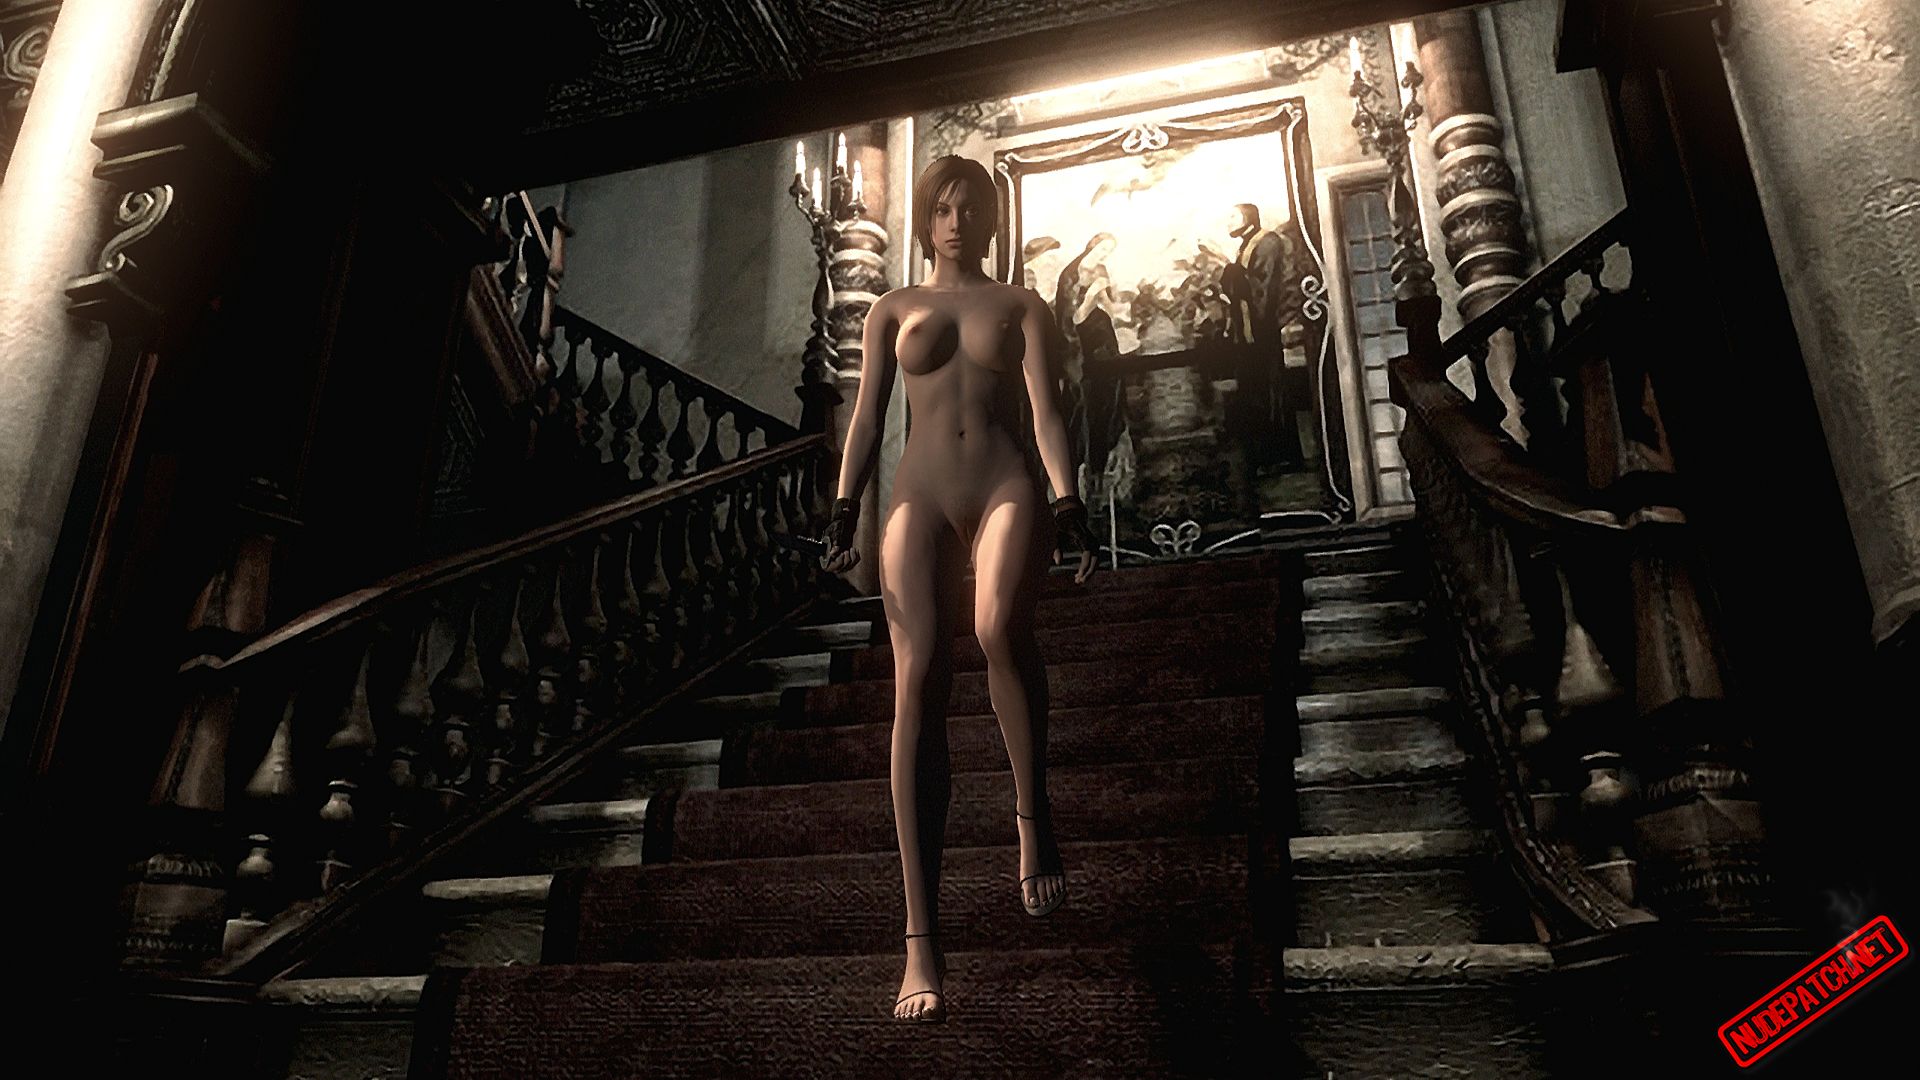 Resident Evil Hd Nude Mod costa nude